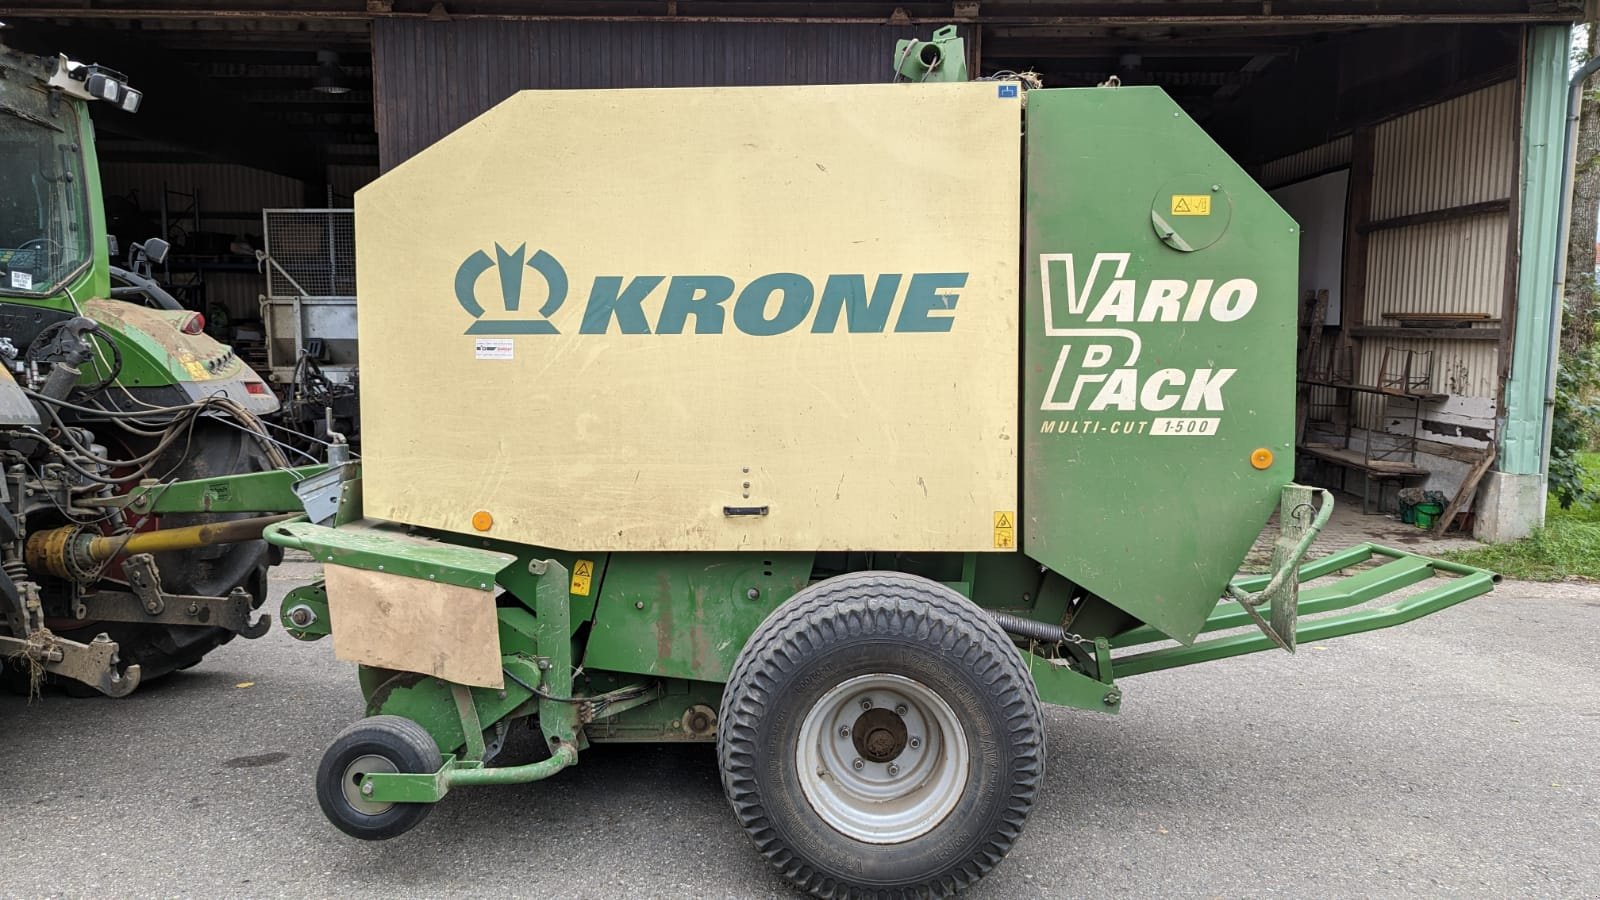 Hochdruckpresse des Typs Krone Vario Pack 1500, Gebrauchtmaschine in Donaueschingen (Bild 1)